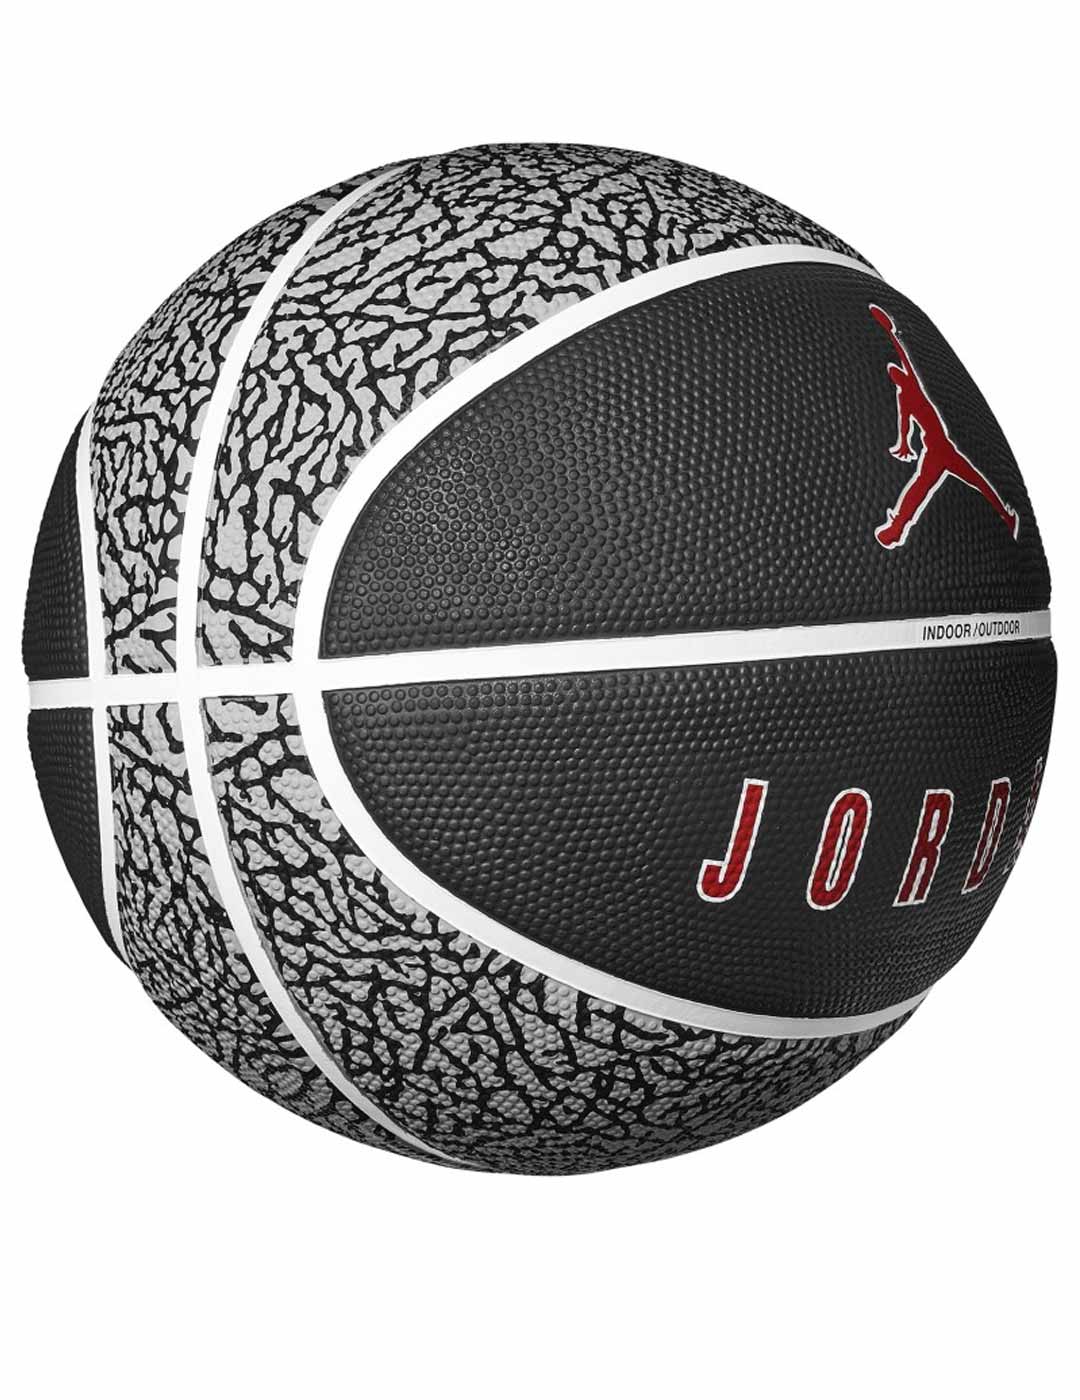 balón de baloncesto JORDAN PLAYGROUND talla 5, negro-gris